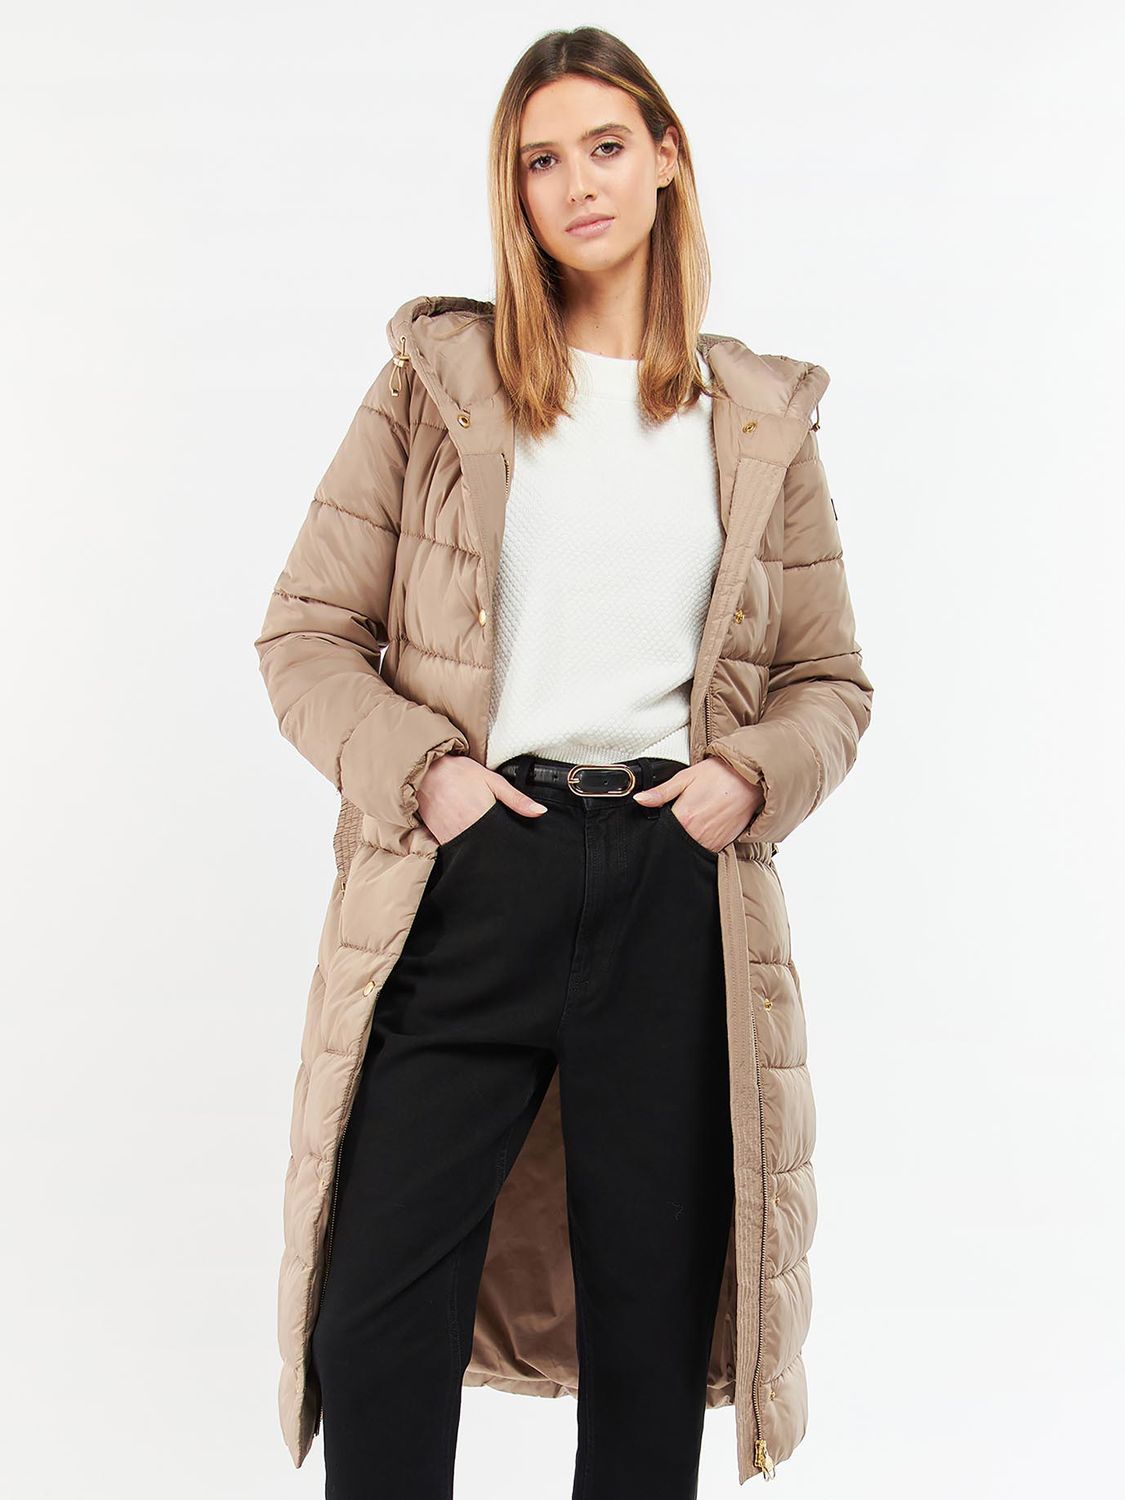 WOMEN FASHION Coats Long coat NO STYLE Beige 44                  EU discount 72% British Chic Long coat 